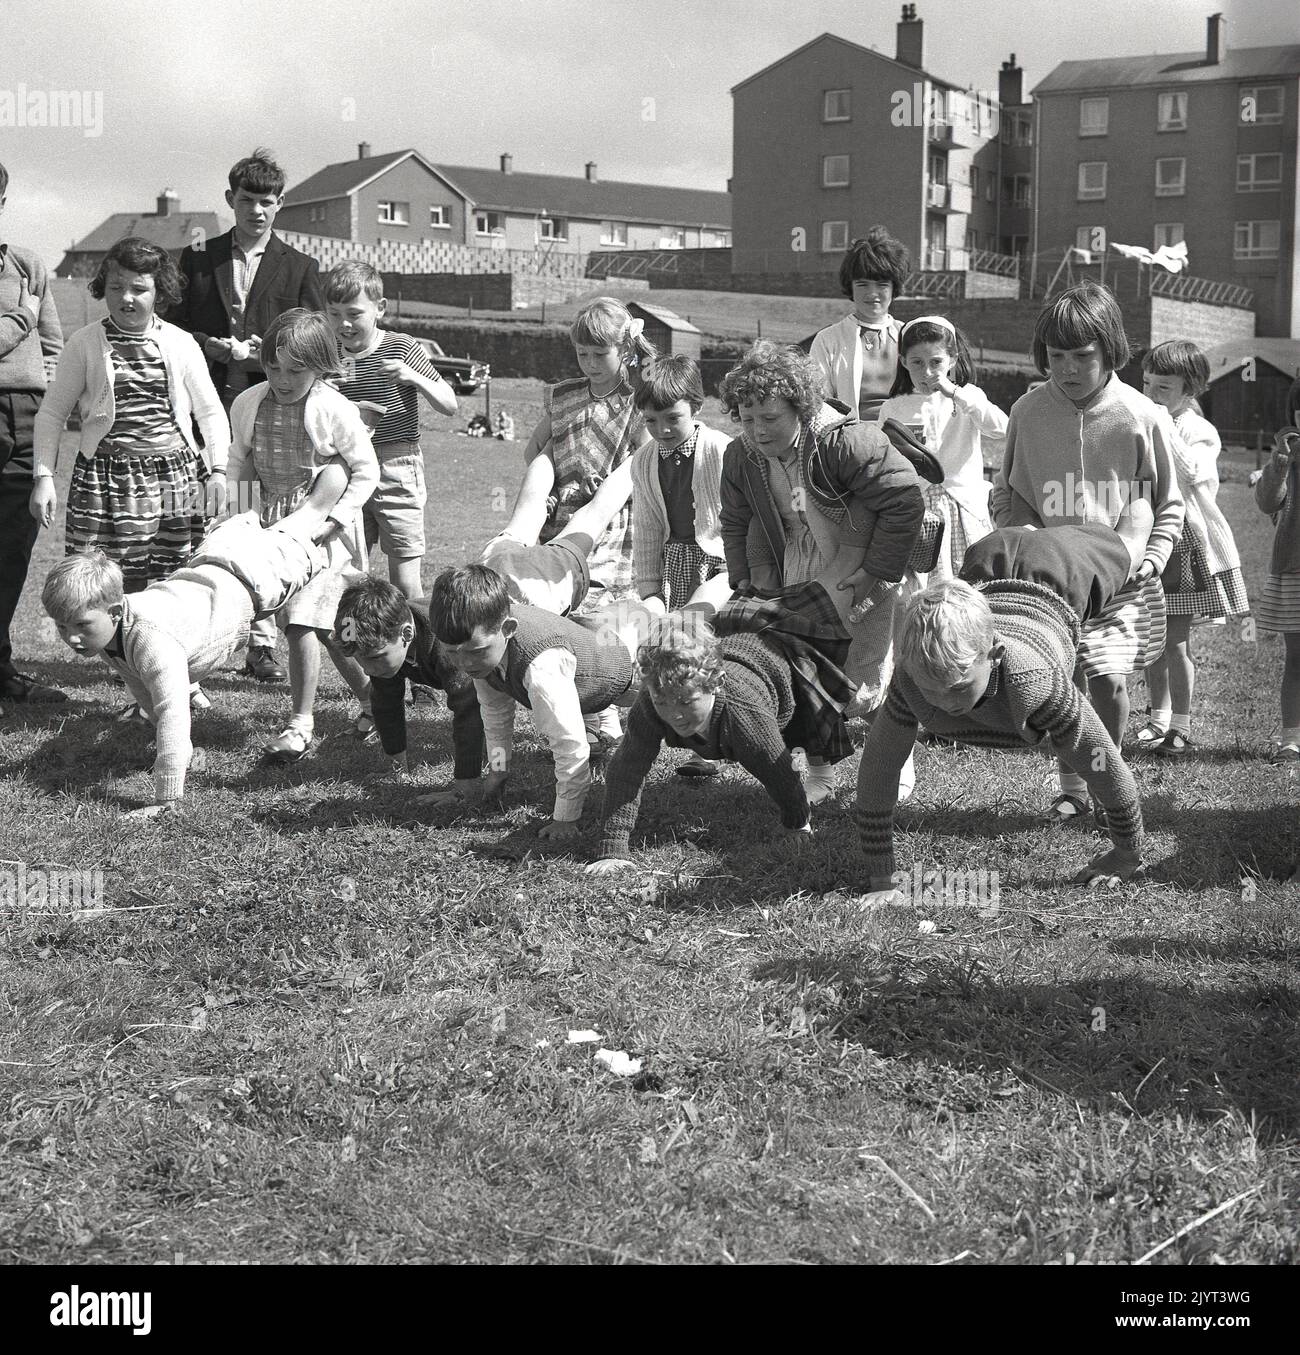 1965, historique, n. queensferry gala jour, les enfants prêts à commencer un match, une course roue-barrow dehors sur l'herbe dans le domaine d'un logement à North Queensferry, Fife, Écosse, Royaume-Uni, les jeunes filles tenant les jambes des garçons! Banque D'Images